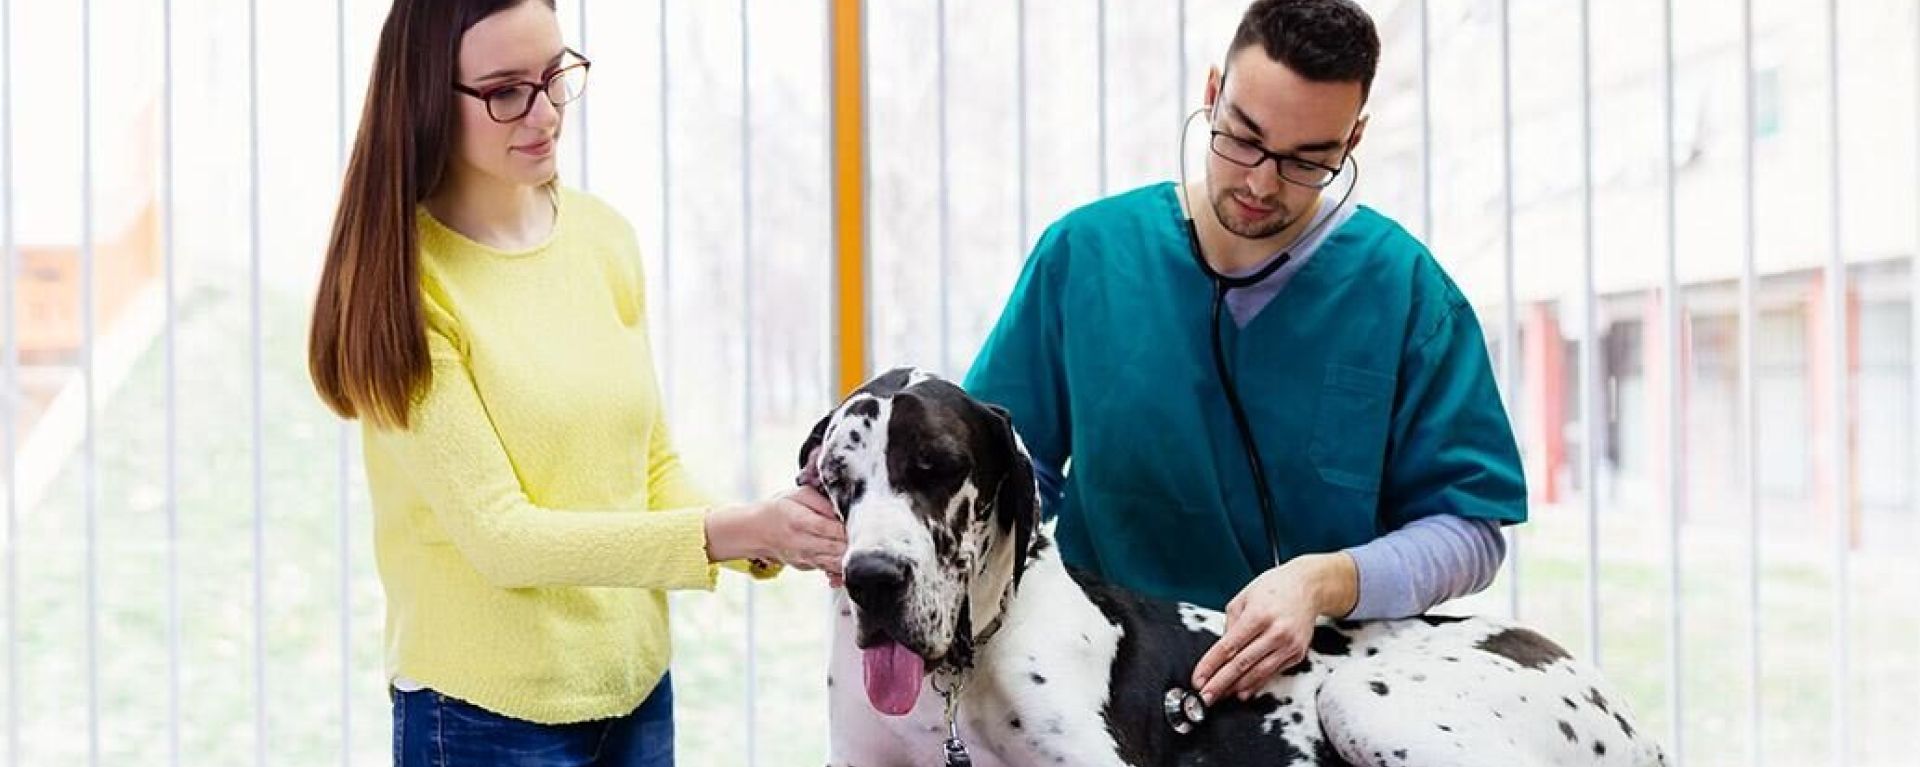 Причины острого расширения и заворота желудка у собак. Взгляд диетолога